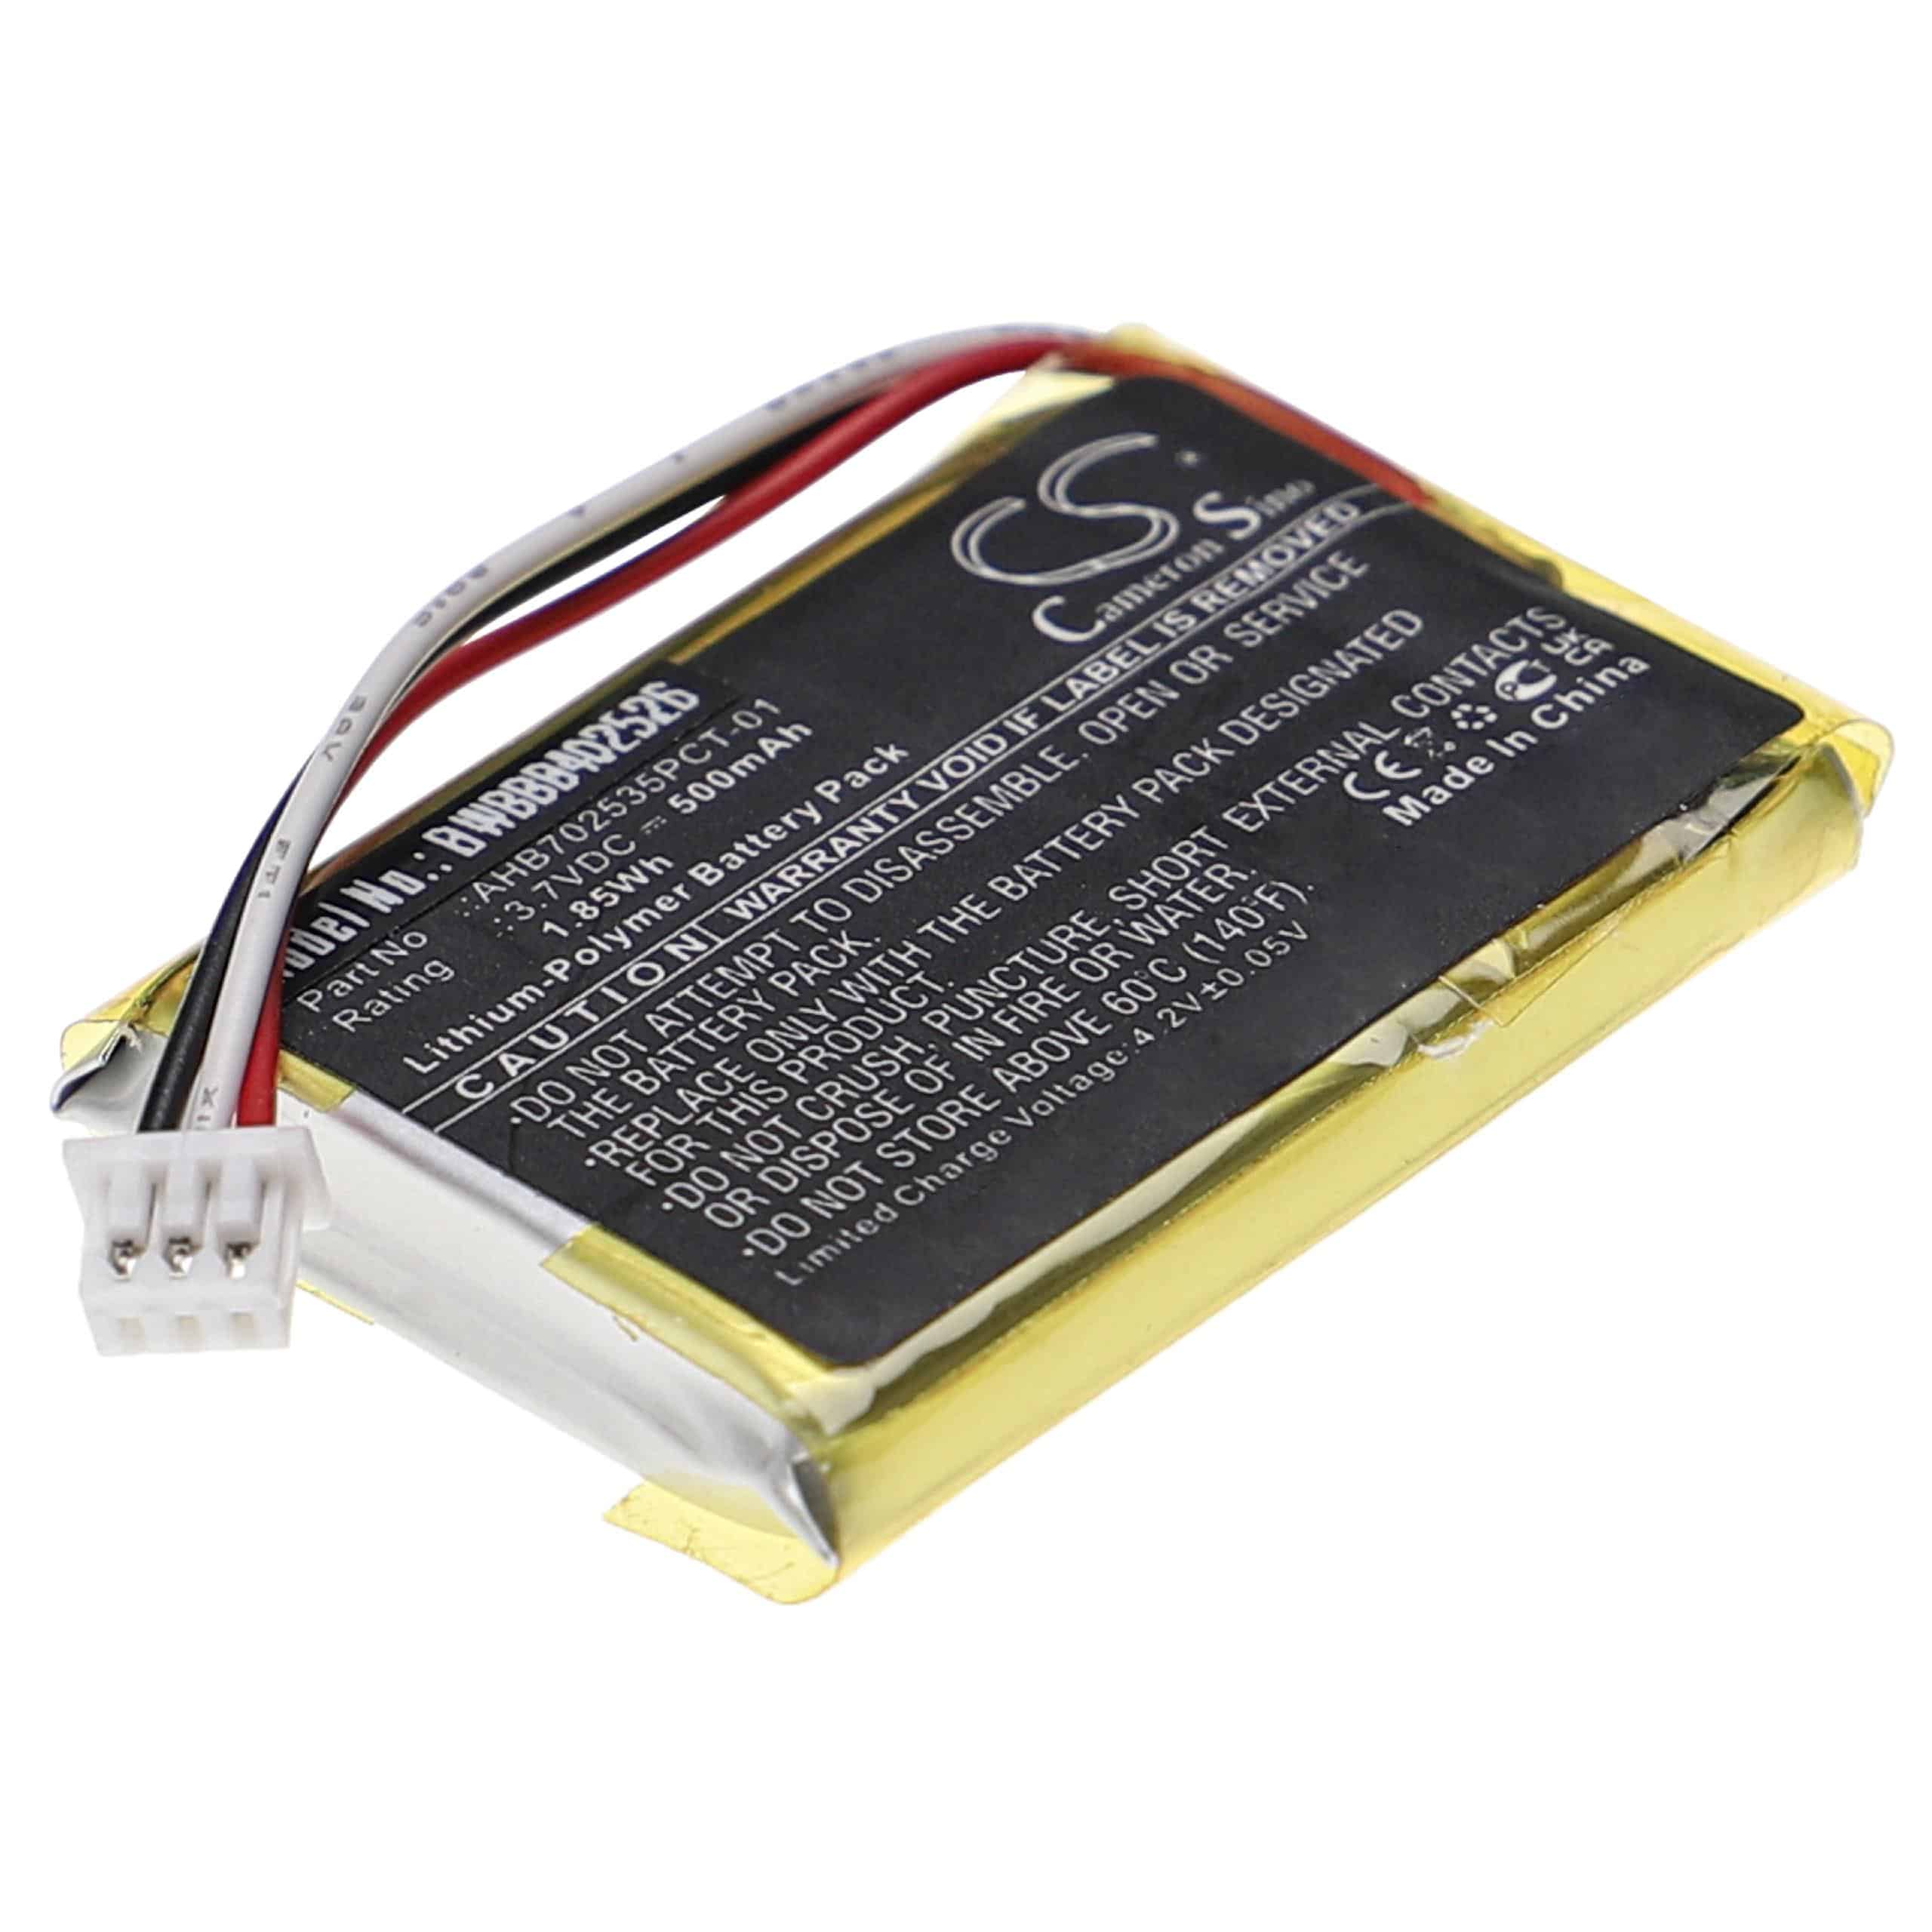 Batterie remplace Sennheiser AHB702535PCT-01 pour casque audio - 500mAh 3,7V Li-polymère